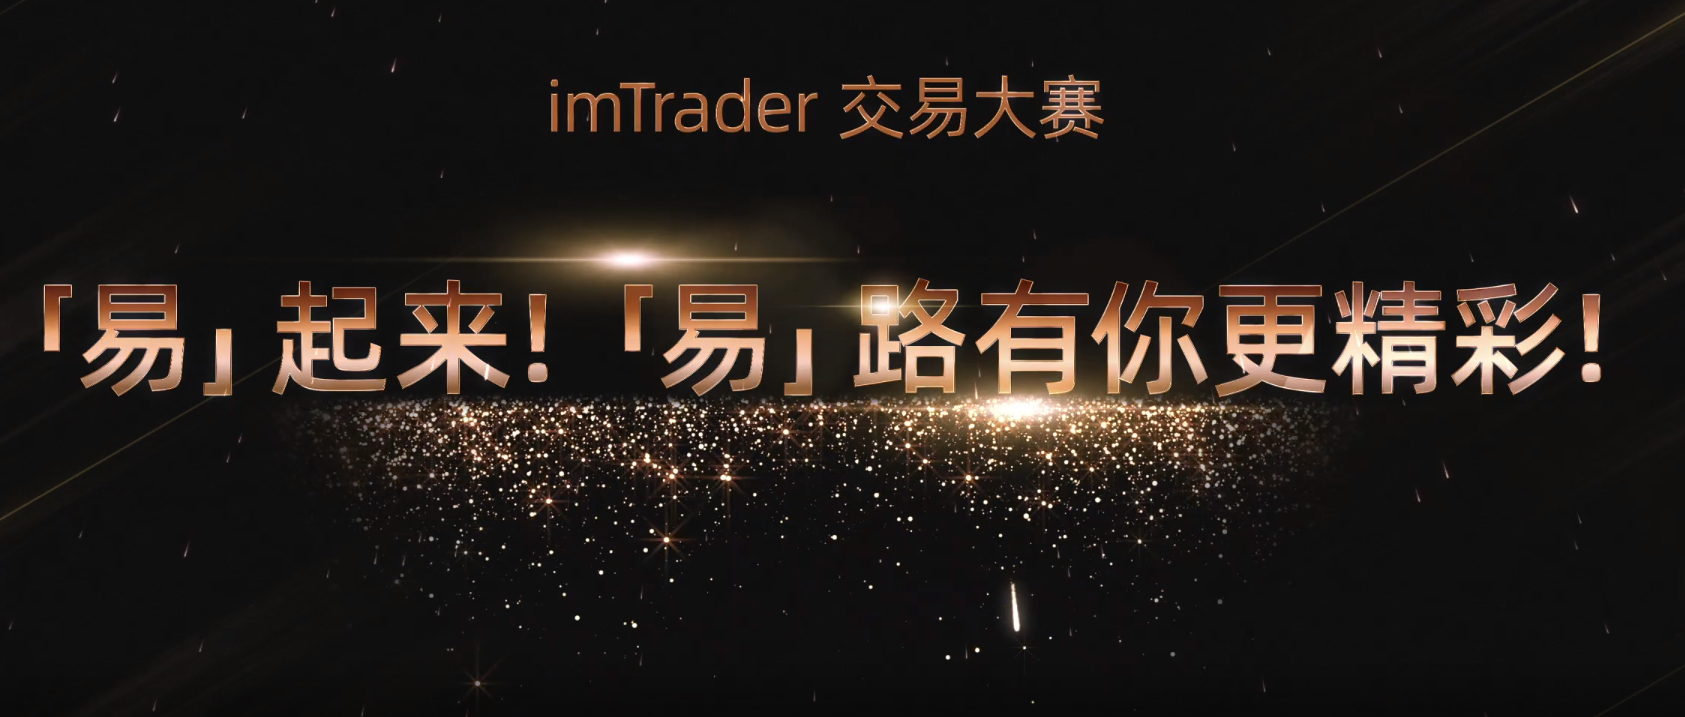 【高光时刻】 imTrader 交易大赛 S8 赛季颁奖典礼圆满落幕！